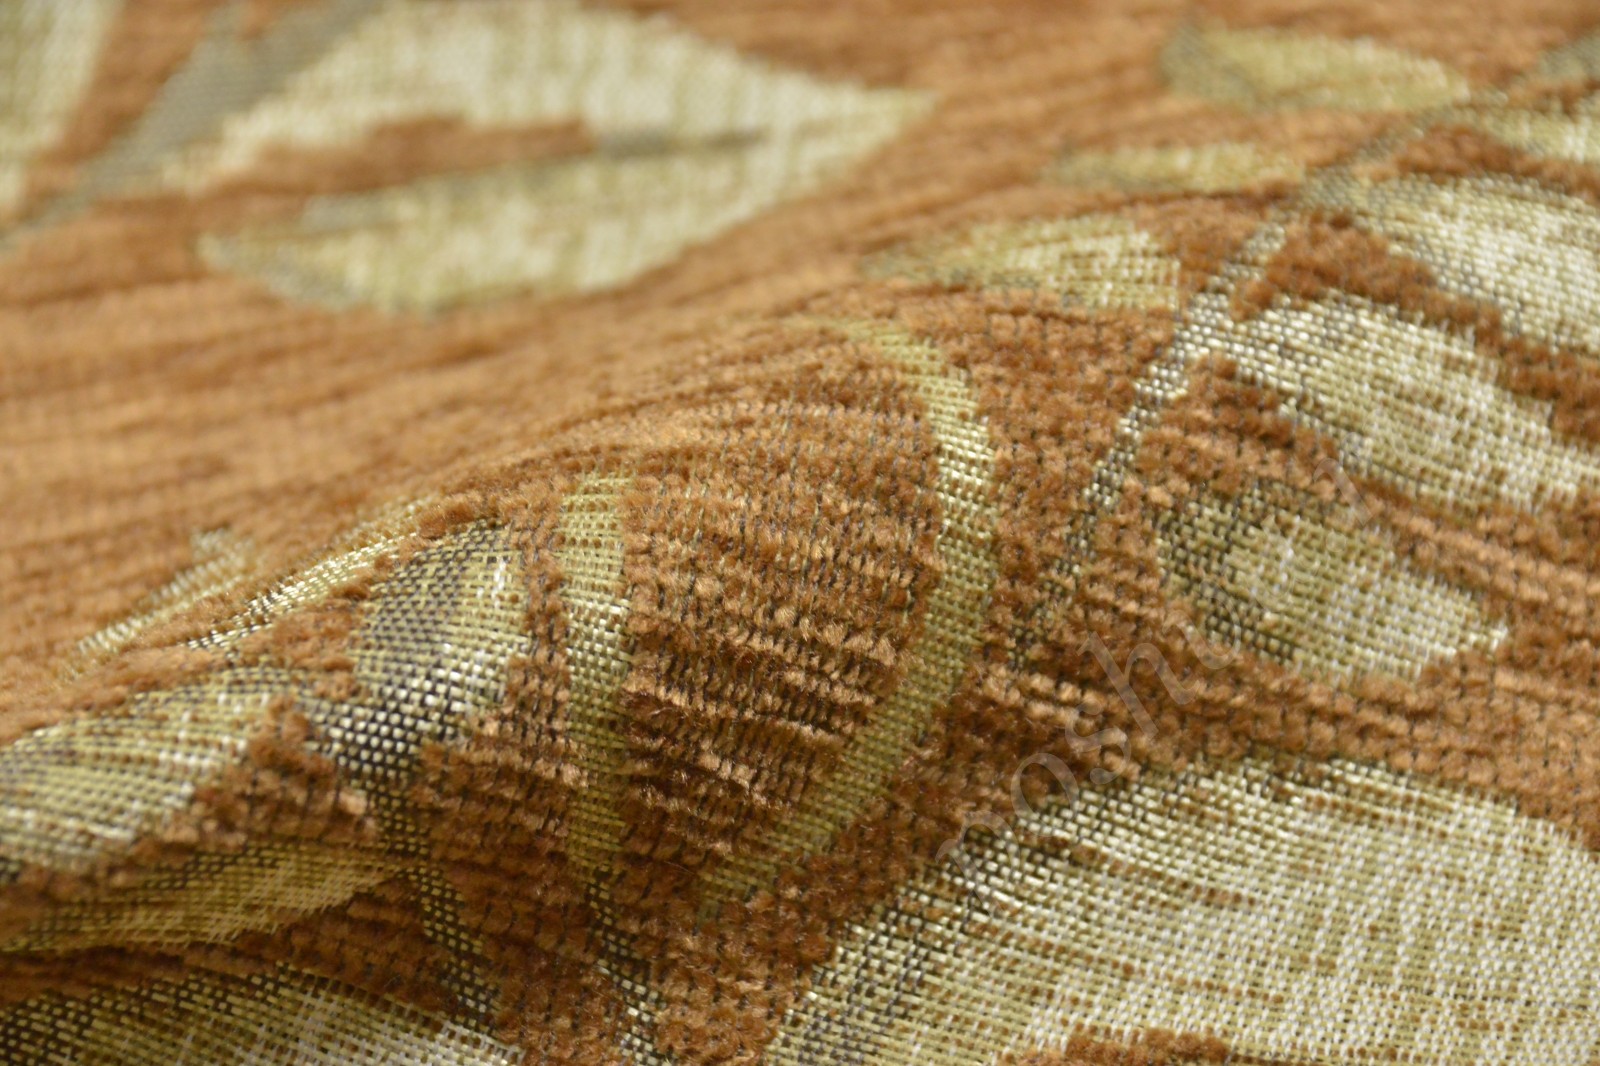 Ткань для мебели шенилл светло-коричневого оттенка с узором